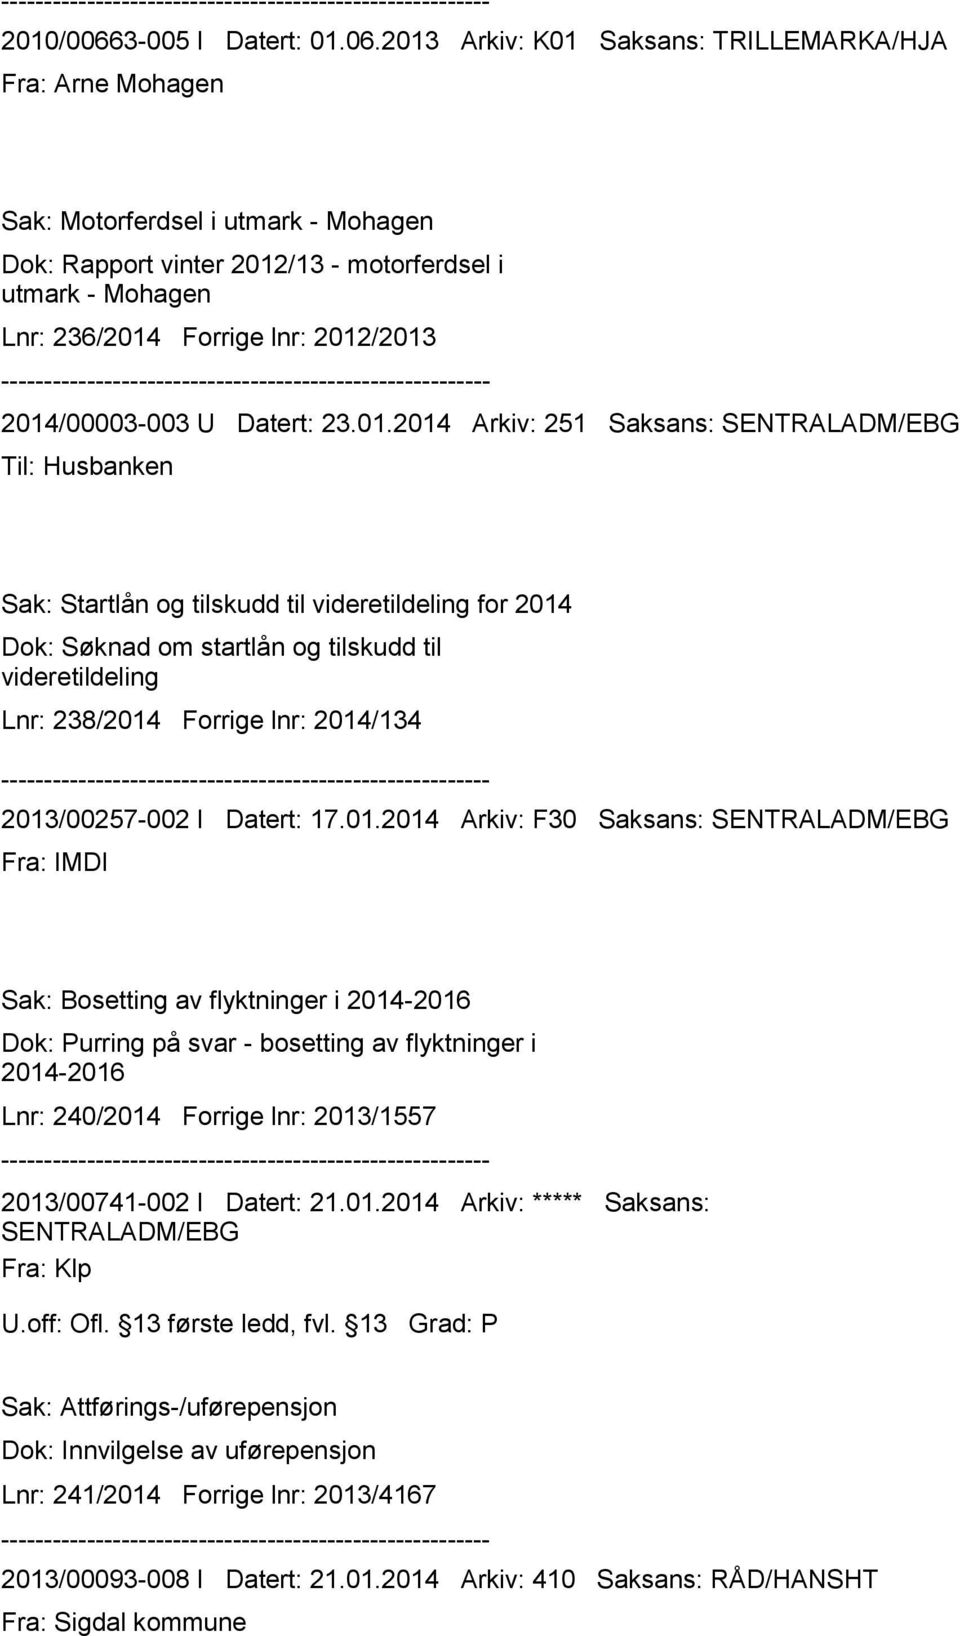 2013 Arkiv: K01 Saksans: TRILLEMARKA/HJA Fra: Arne Mohagen Sak: Motorferdsel i utmark - Mohagen Dok: Rapport vinter 2012/13 - motorferdsel i utmark - Mohagen Lnr: 236/2014 Forrige lnr: 2012/2013